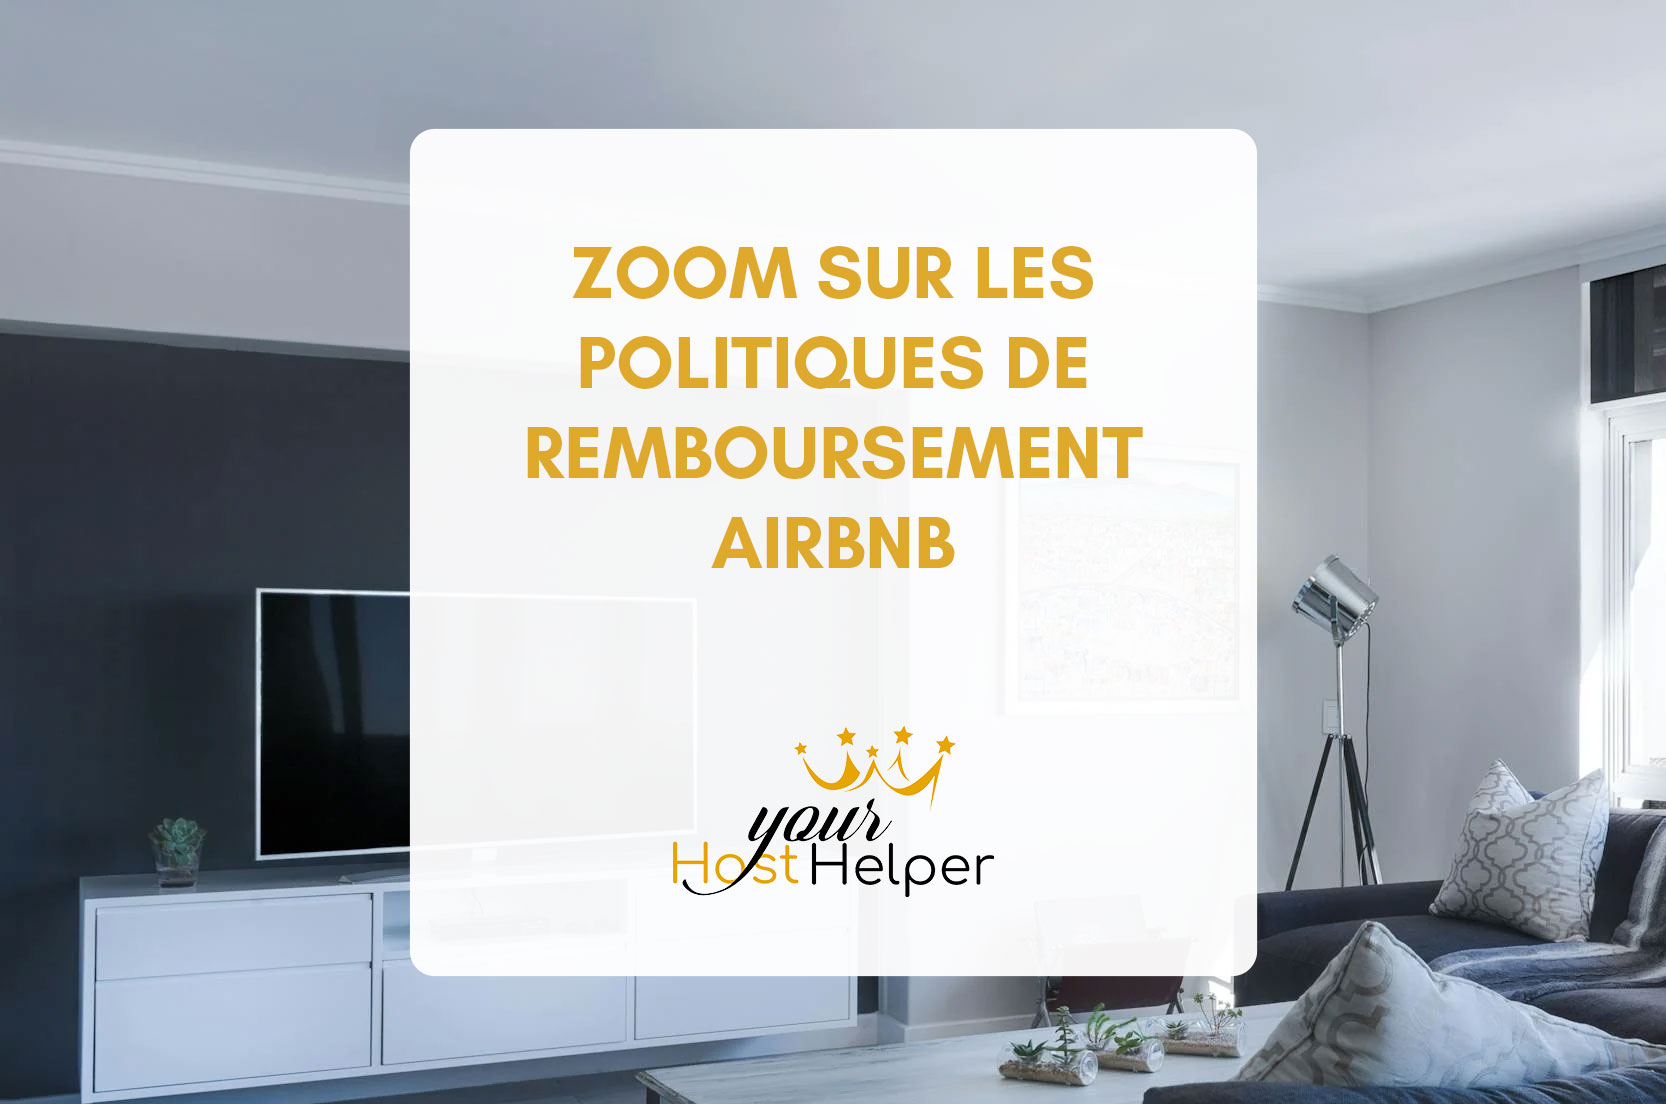 Attualmente stai visualizzando le politiche di rimborso di Zoom su Airbnb